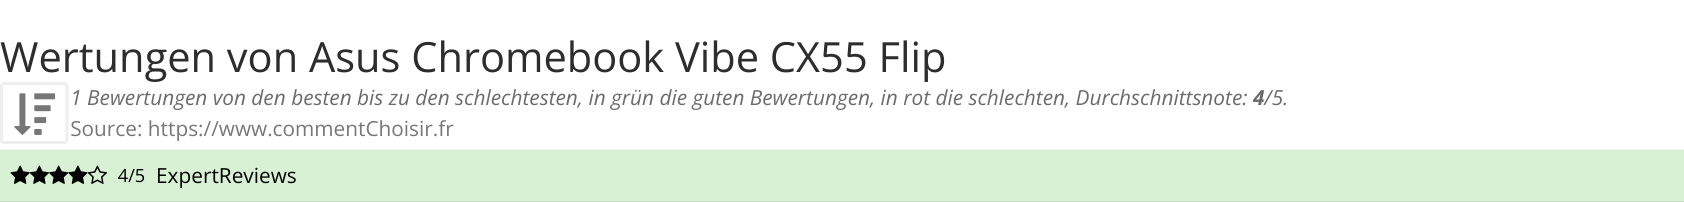 Ratings Asus  Chromebook Vibe CX55 Flip